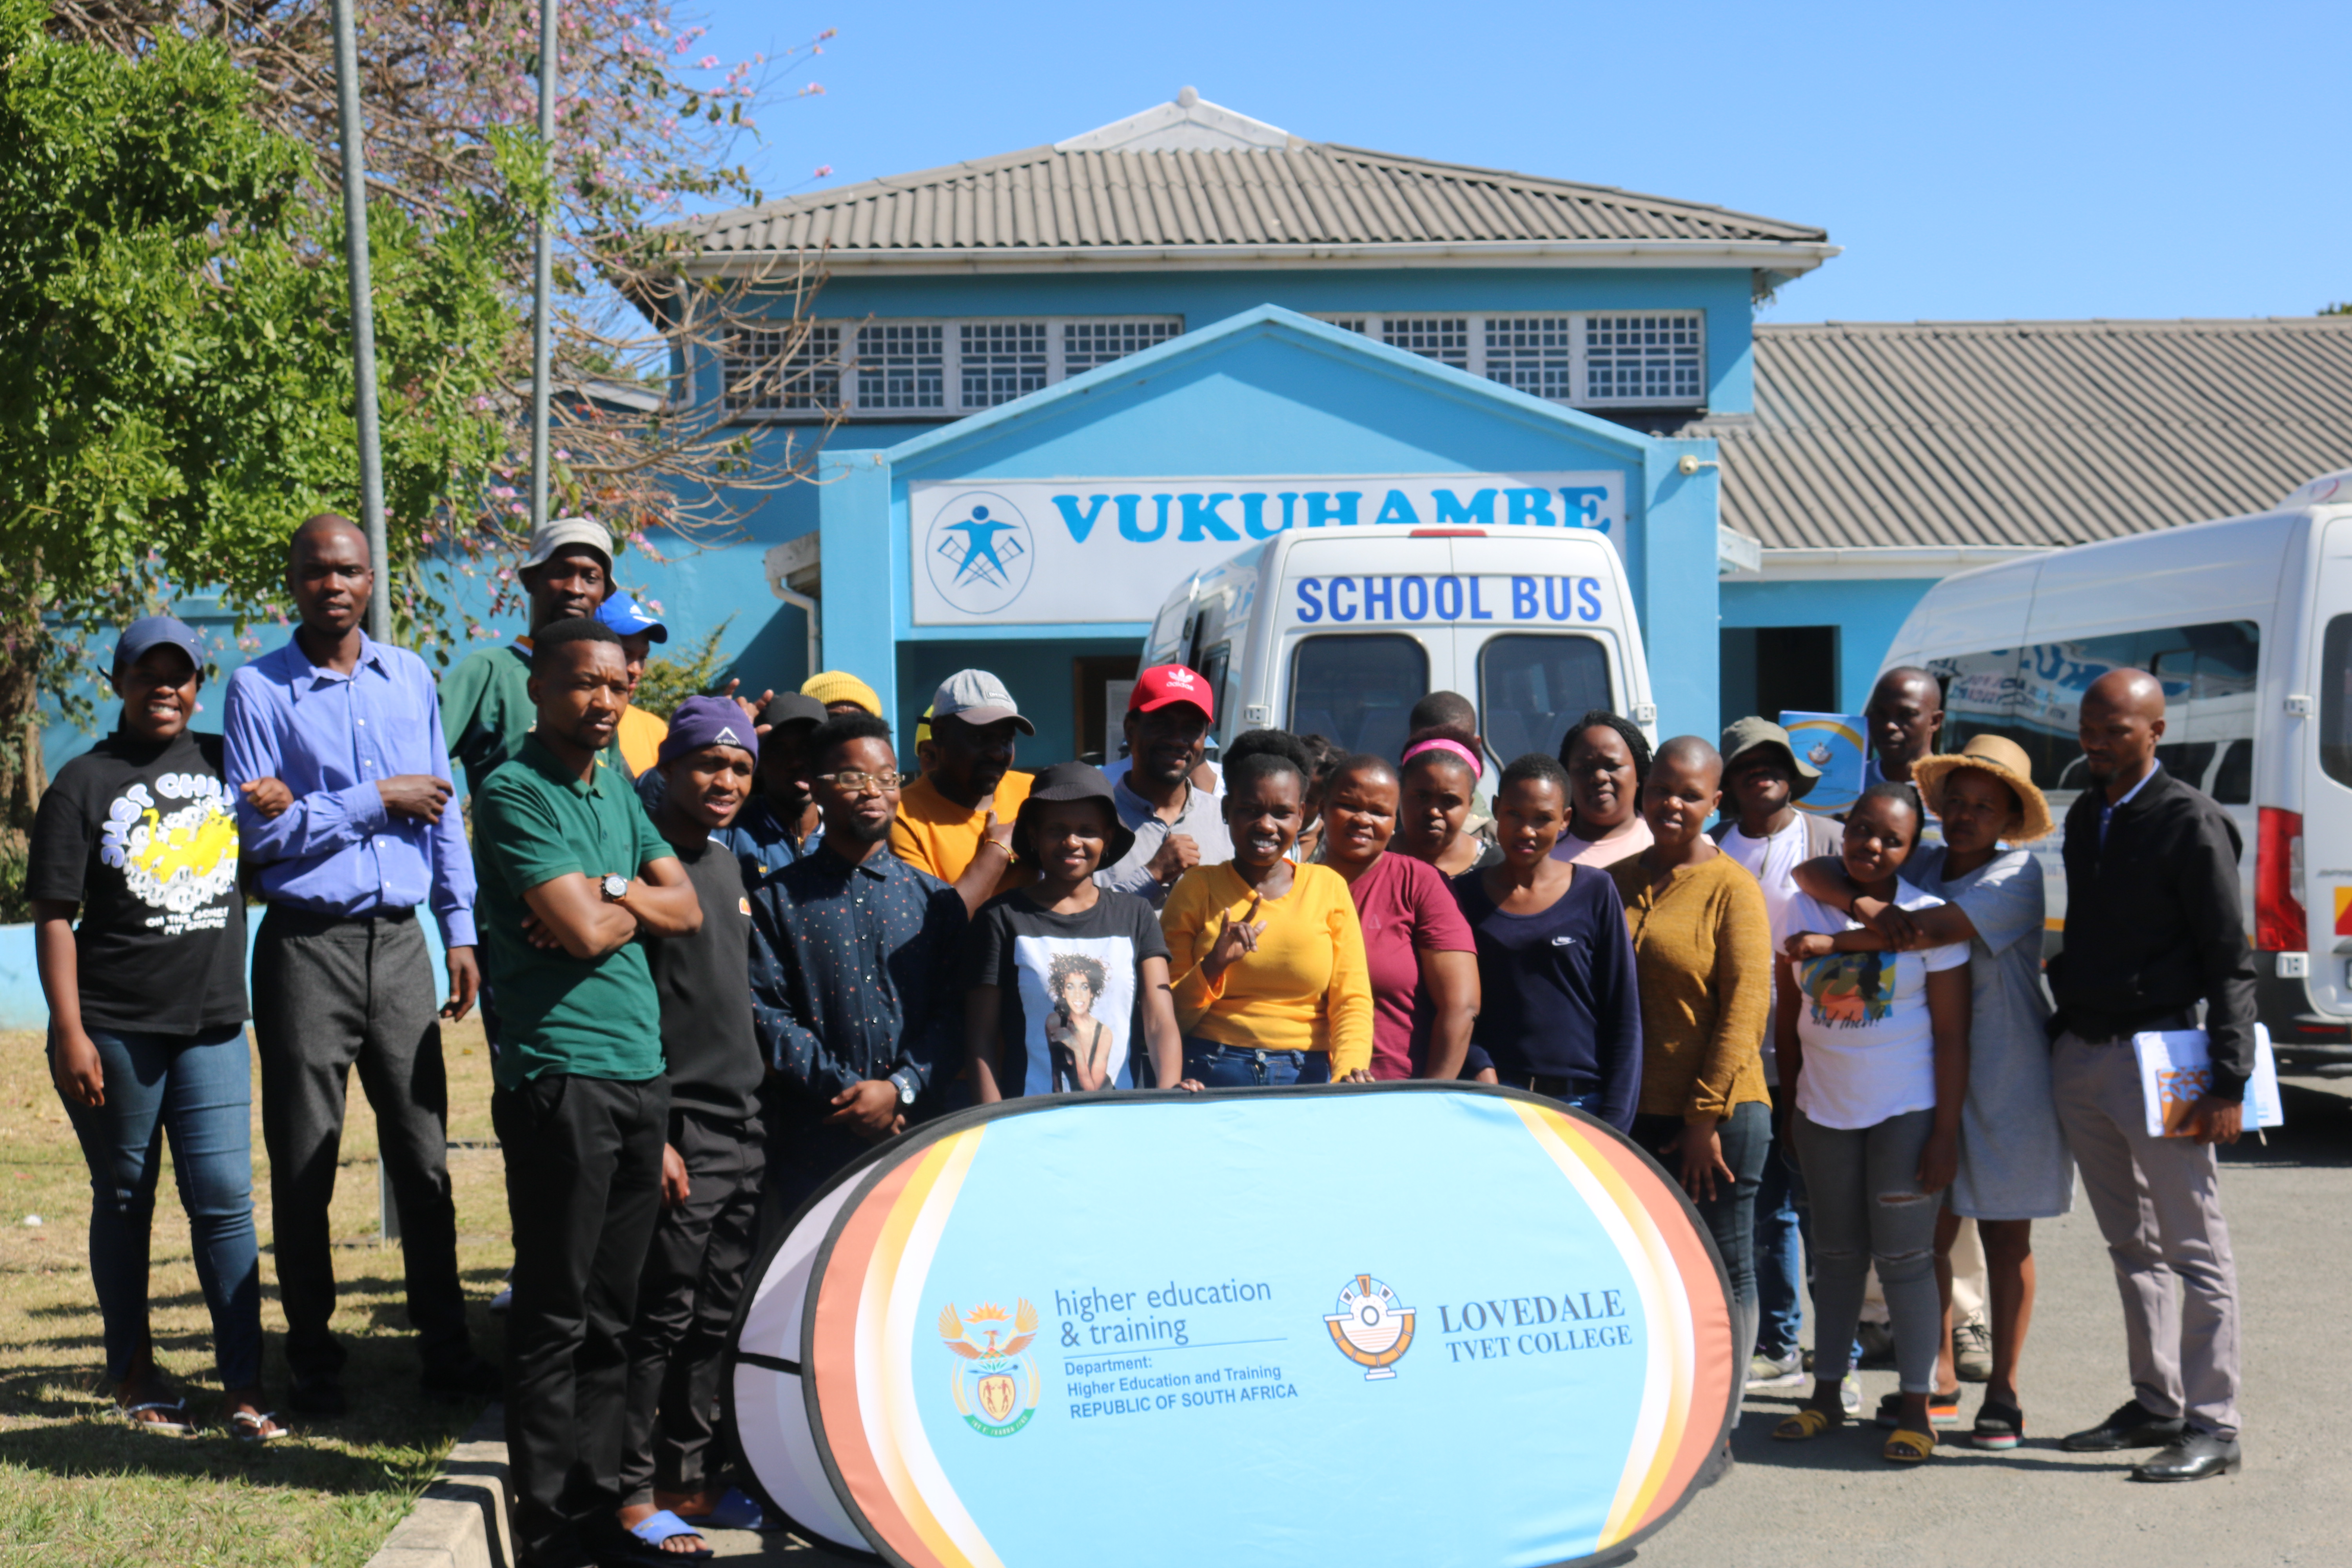 Above: Lovedale's PLU staff with students at Vukuhambe site in Mdantsane, N.U 9.